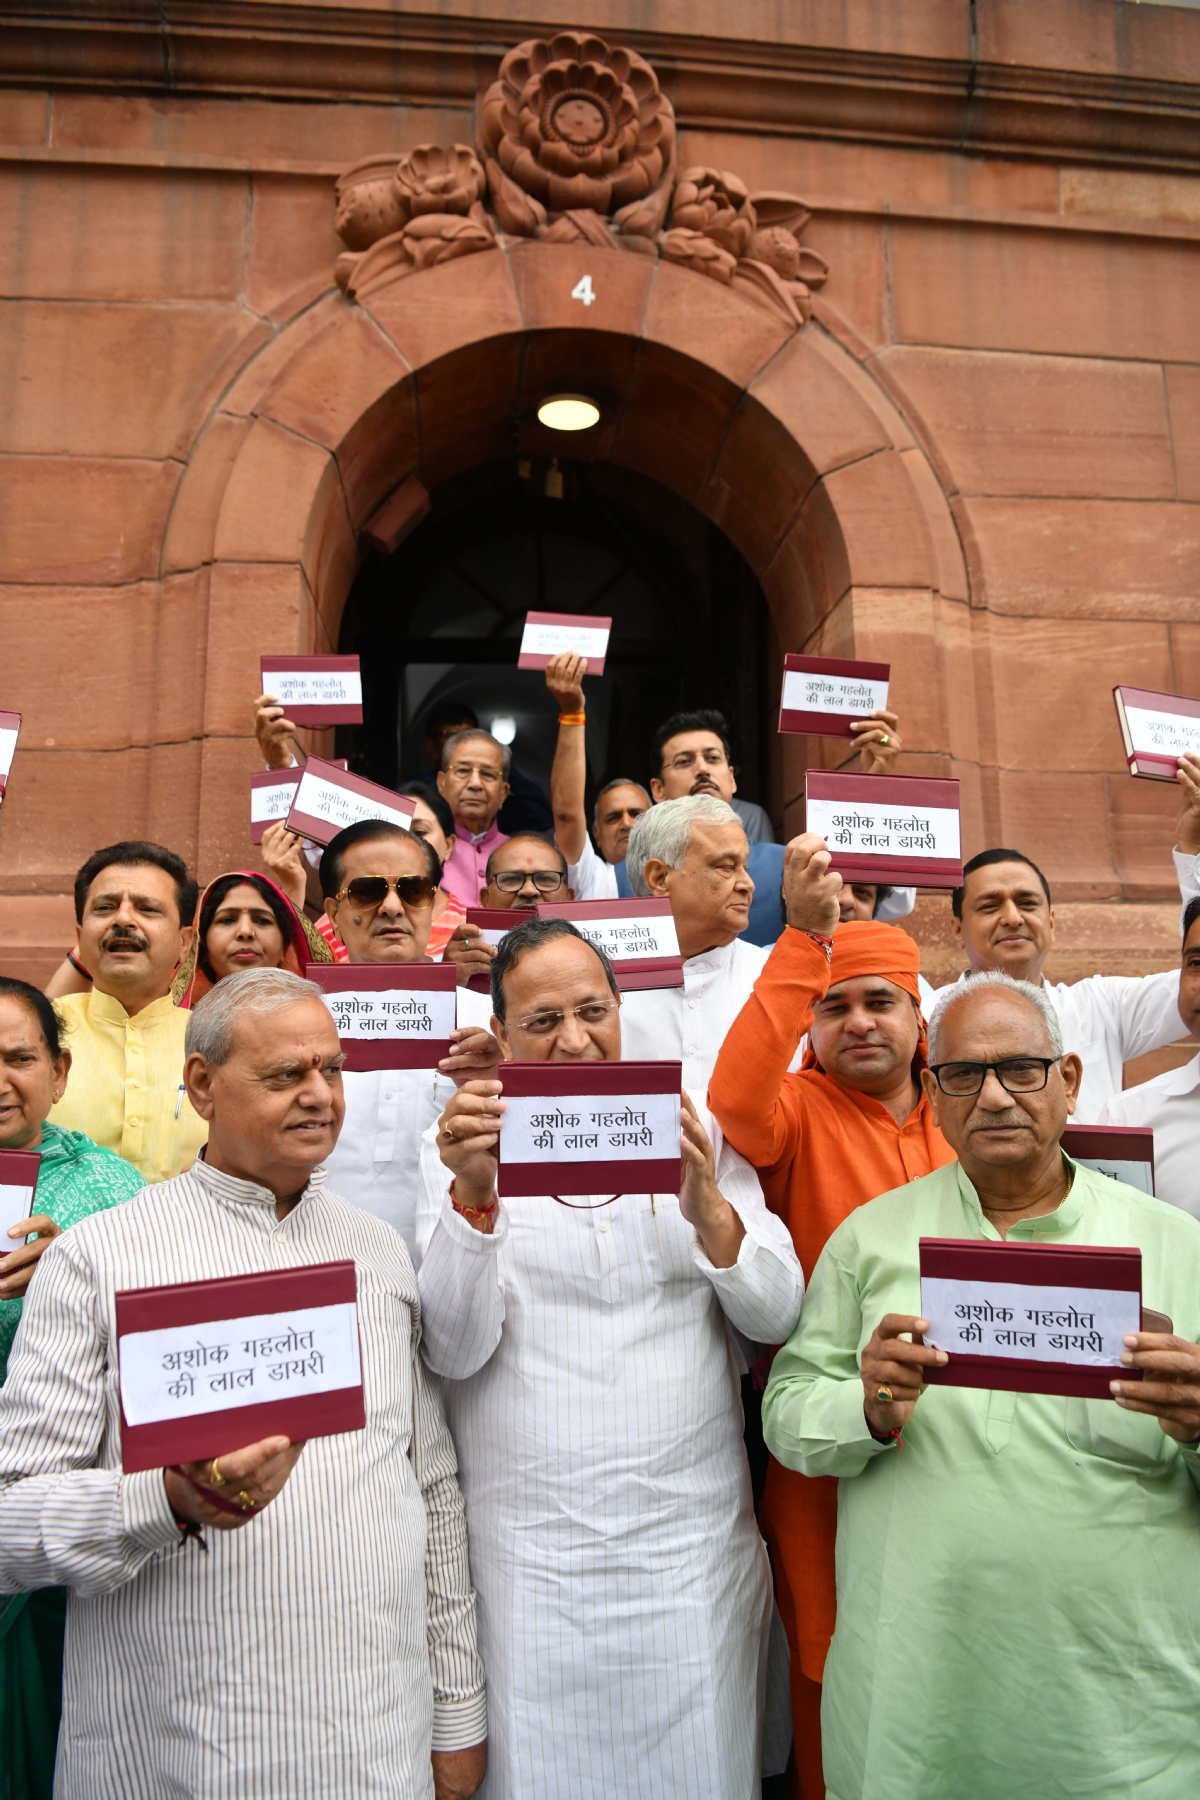 नई दिल्ली में बुधवार 26 जुलाई को संसद भवन परिसर में भाजपा सांसदों ने राजस्थान को लेकर प्रदर्शन किया। हिन्दुस्थान समाचार/ फोटो गणेश बिष्ट